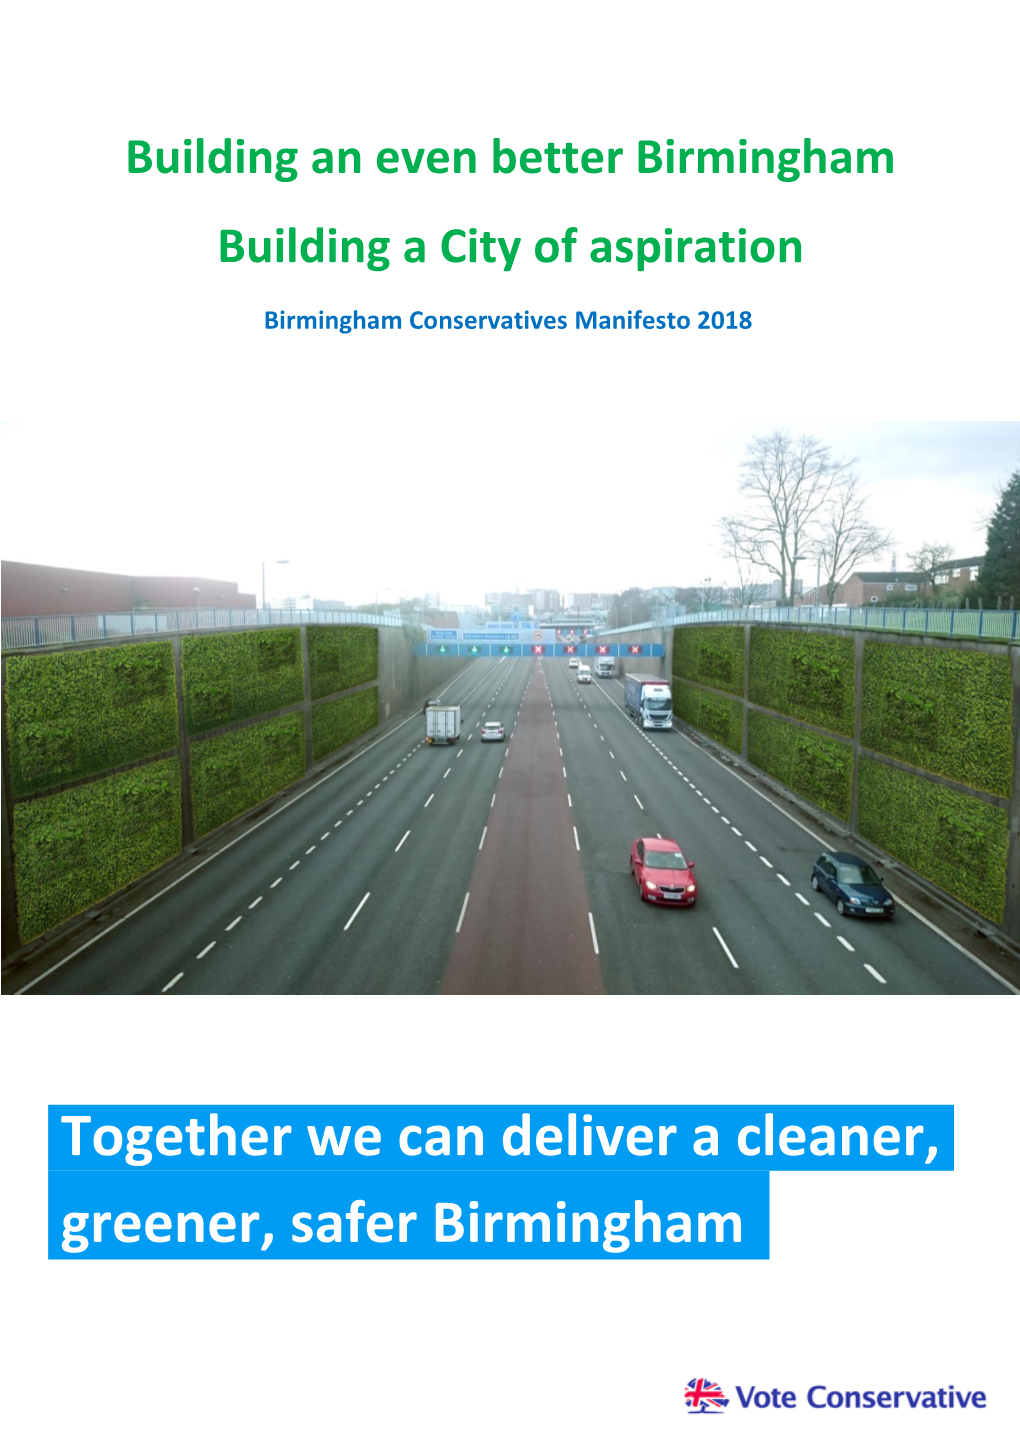 Together We Can Deliver a Cleaner, Greener, Safer Birmingham